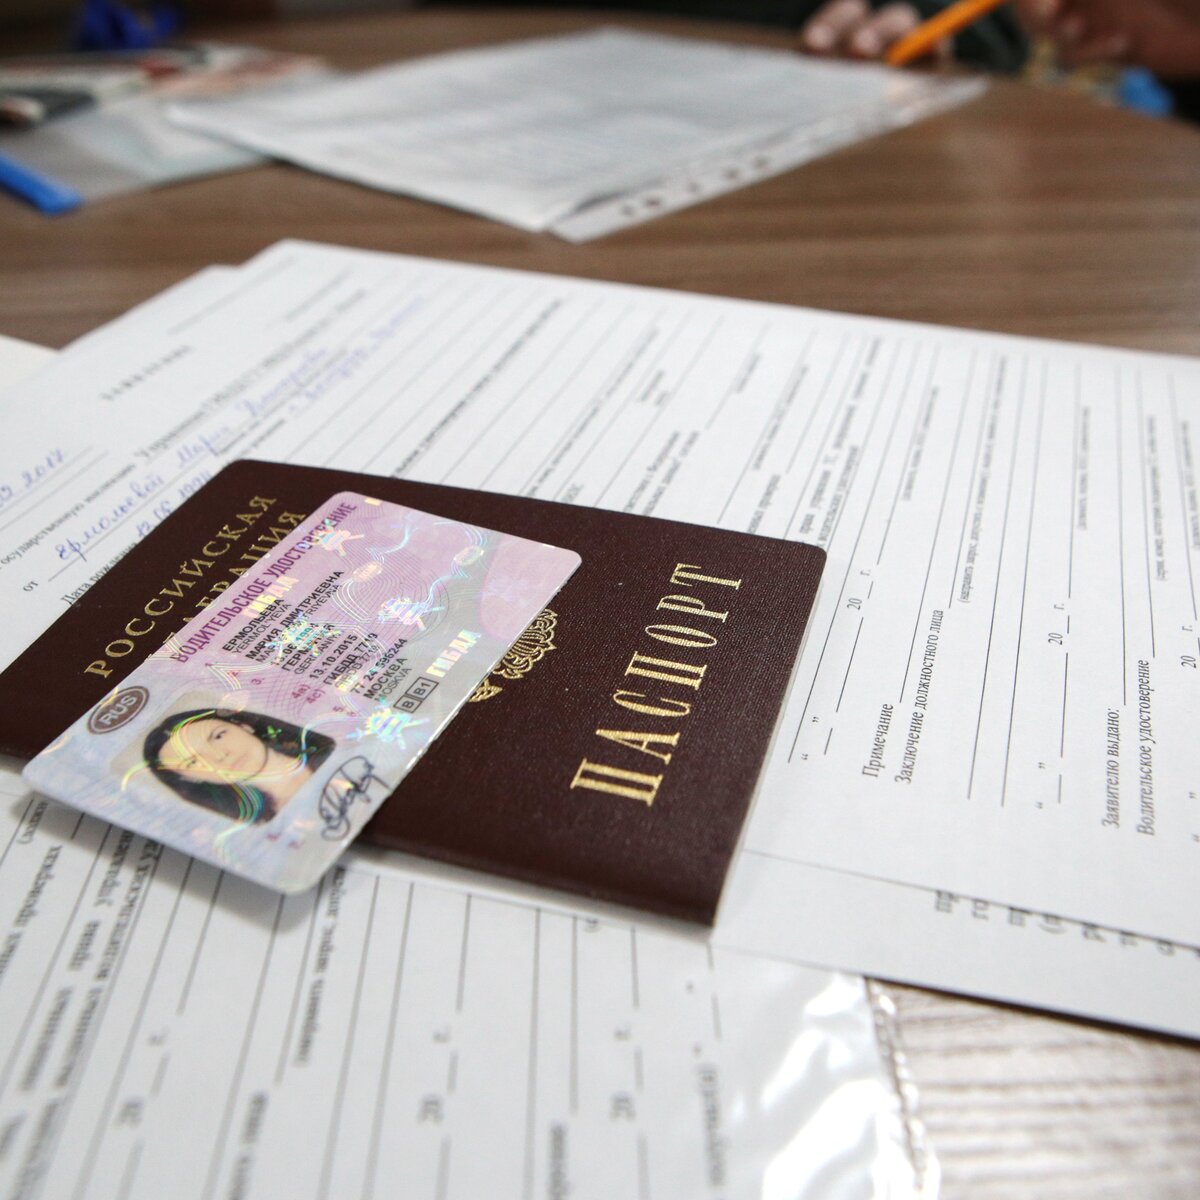 Автопродление срока действия водительских прав в РФ закончится в 2024 году – СМИ